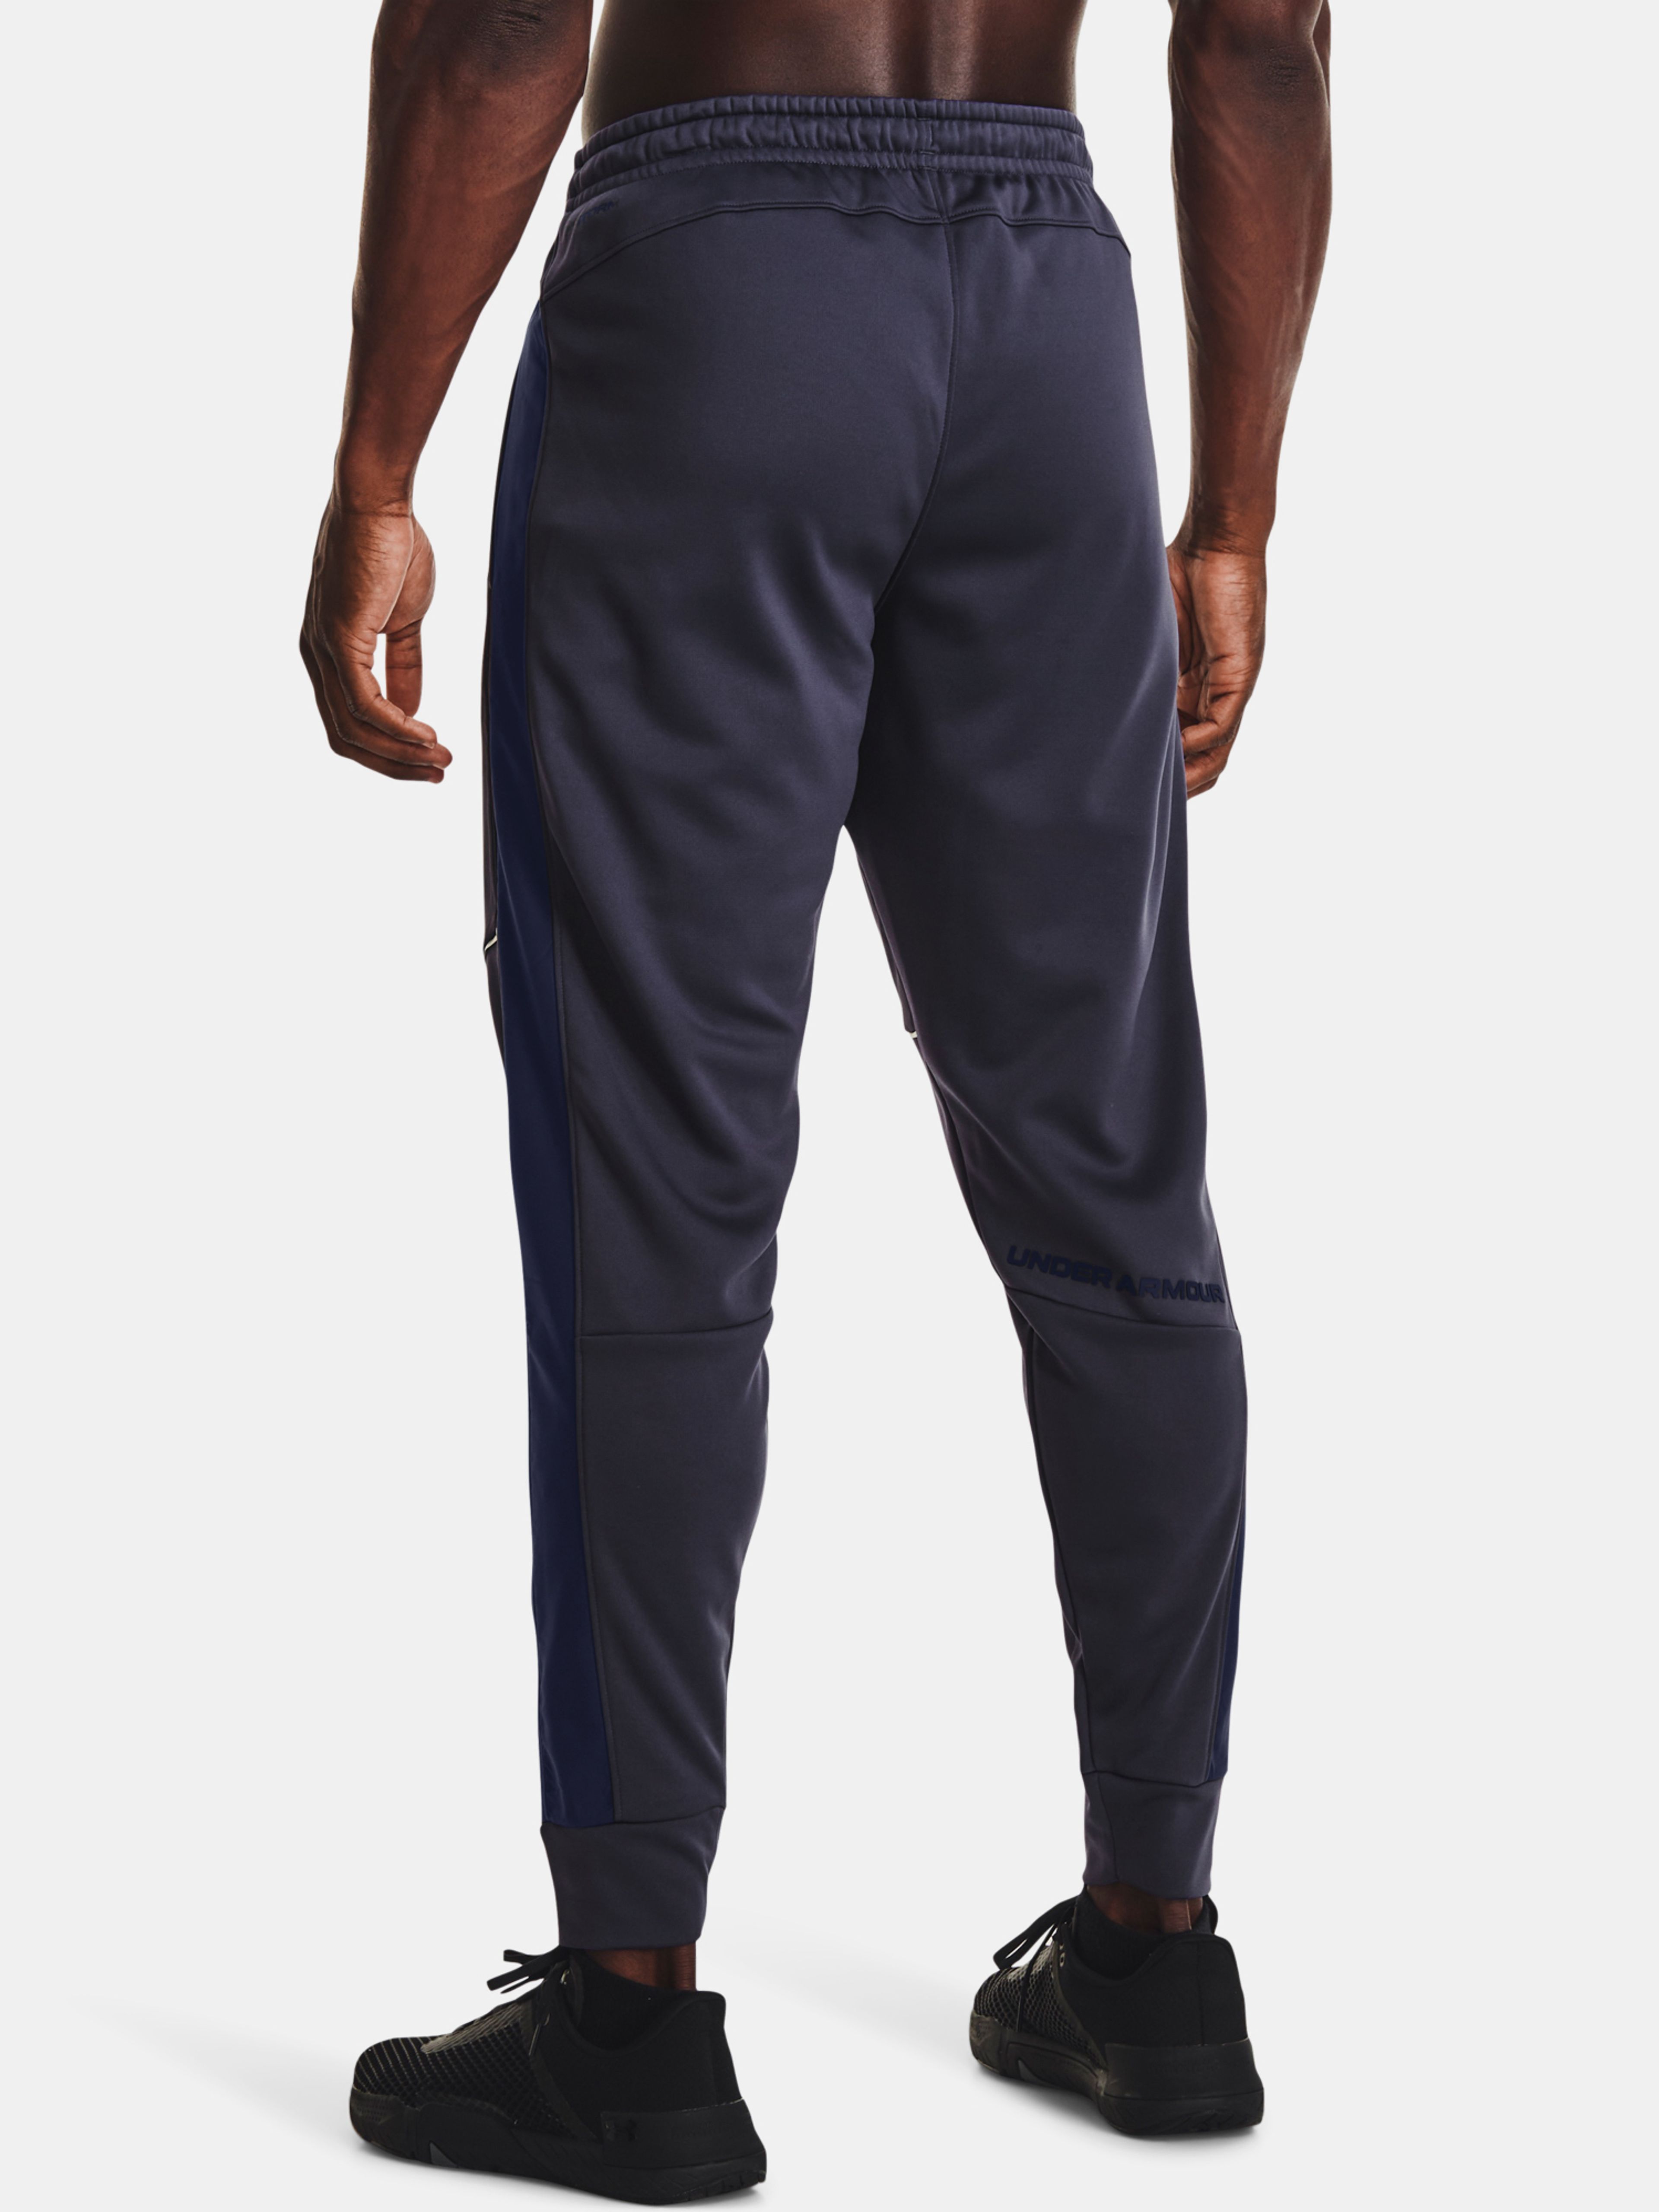  UA AF Storm Pants, Gray/white - men's sweatpants - UNDER  ARMOUR - 66.54 € - outdoorové oblečení a vybavení shop